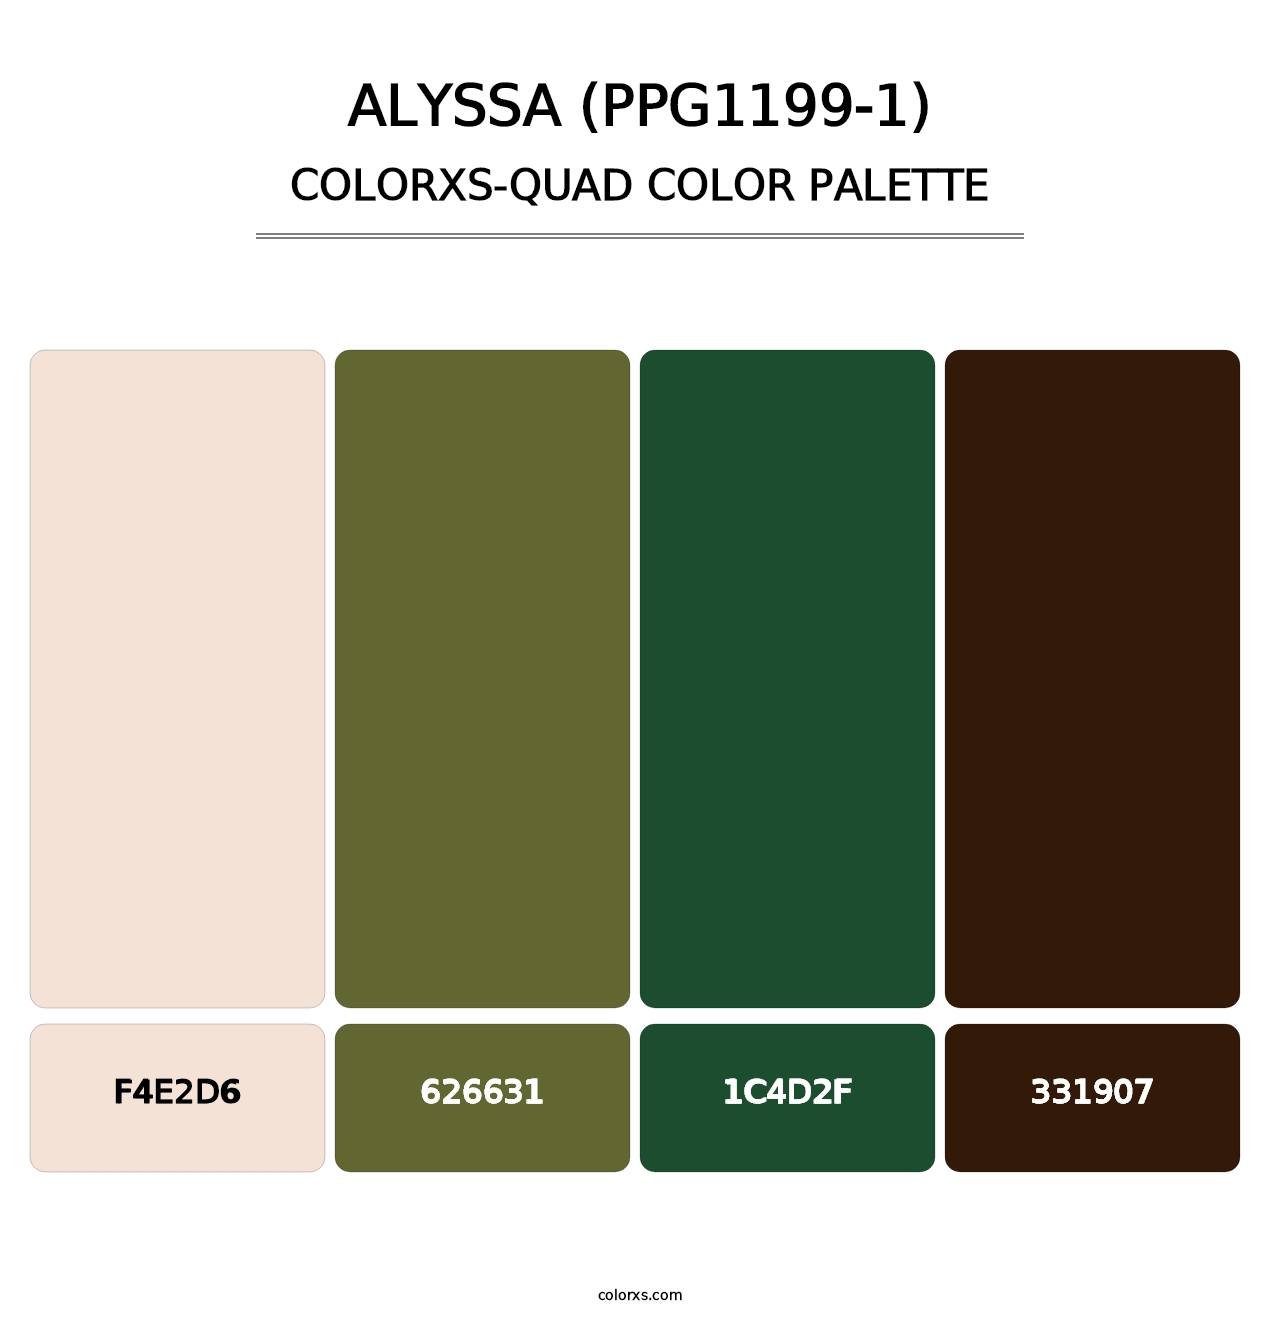 Alyssa (PPG1199-1) - Colorxs Quad Palette